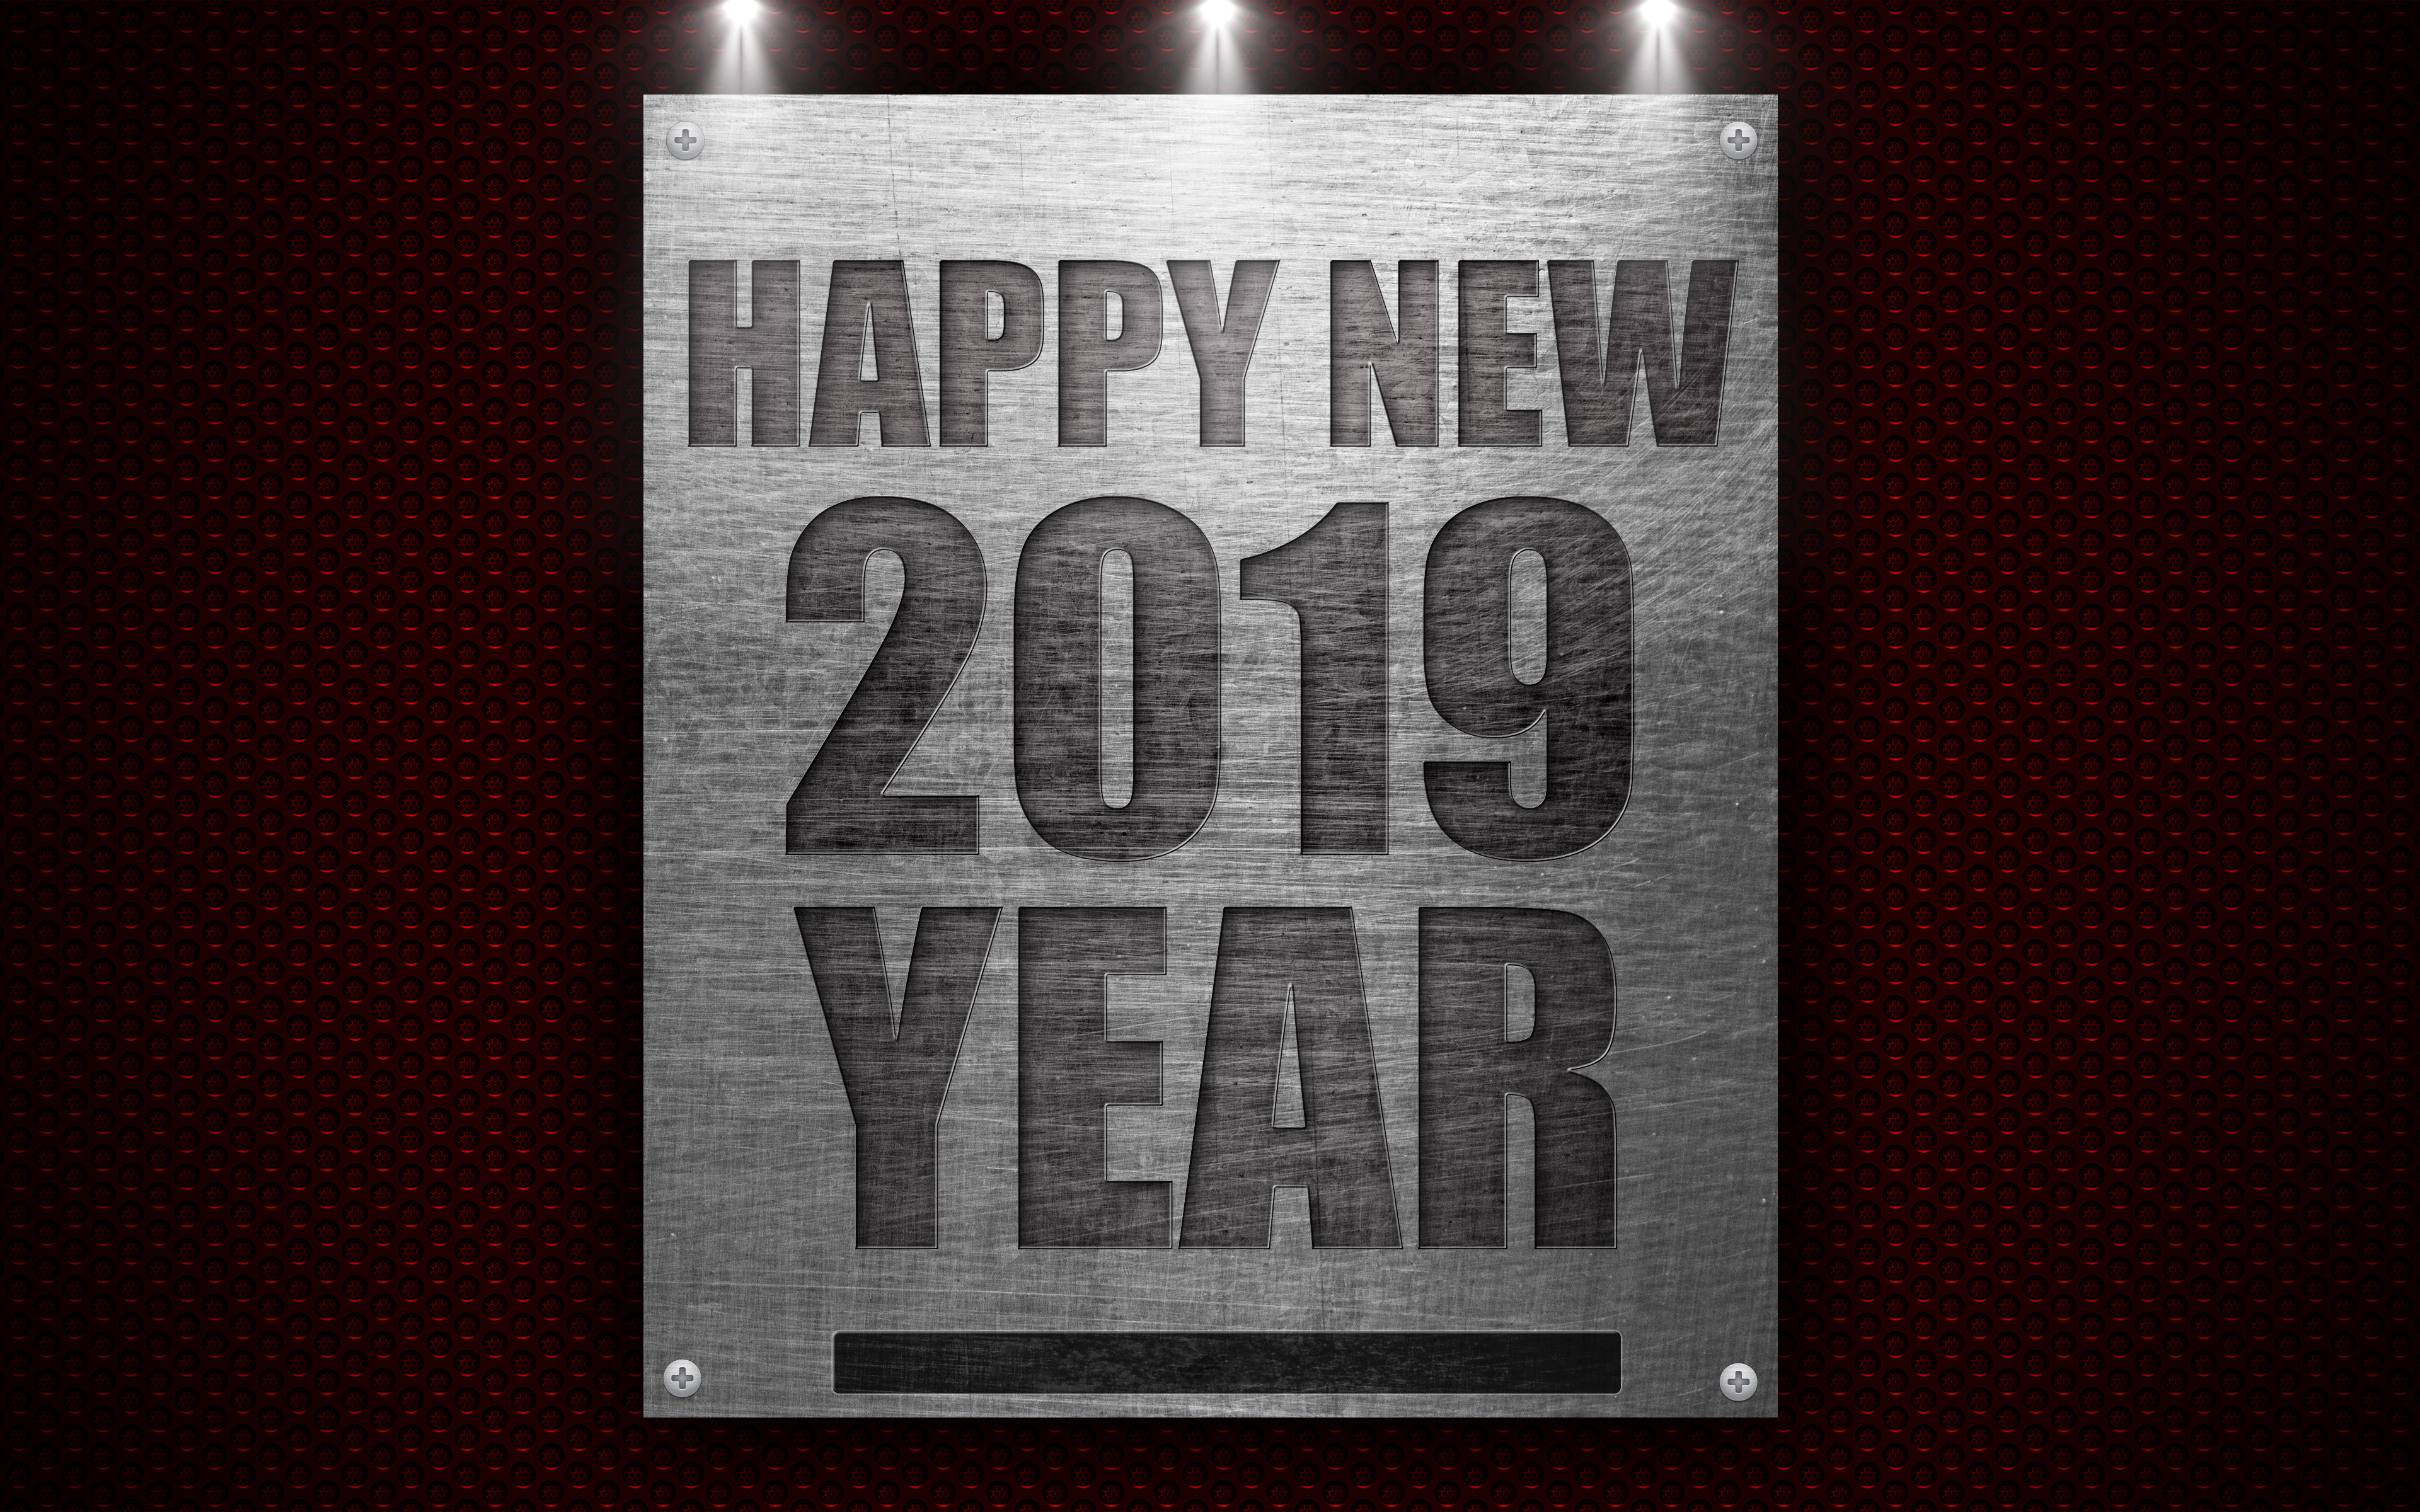 Handy-Wallpaper Feiertage, Neujahr, Frohes Neues Jahr, Neujahr 2019 kostenlos herunterladen.